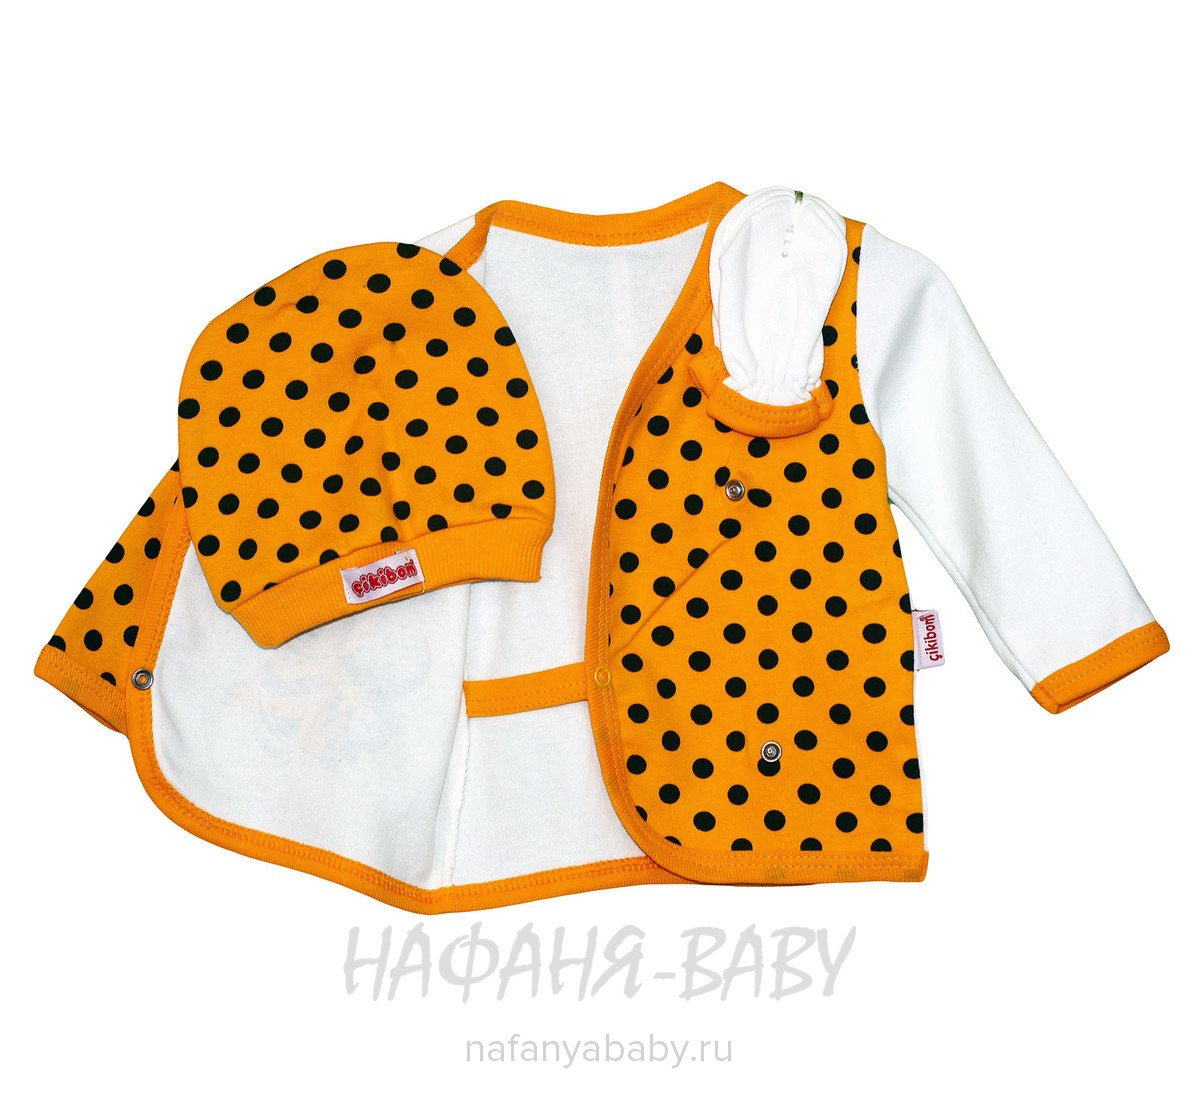 Комплект для новорожденных ПЧЕЛКА CIKIBOM, купить в интернет магазине Нафаня. арт: 621.